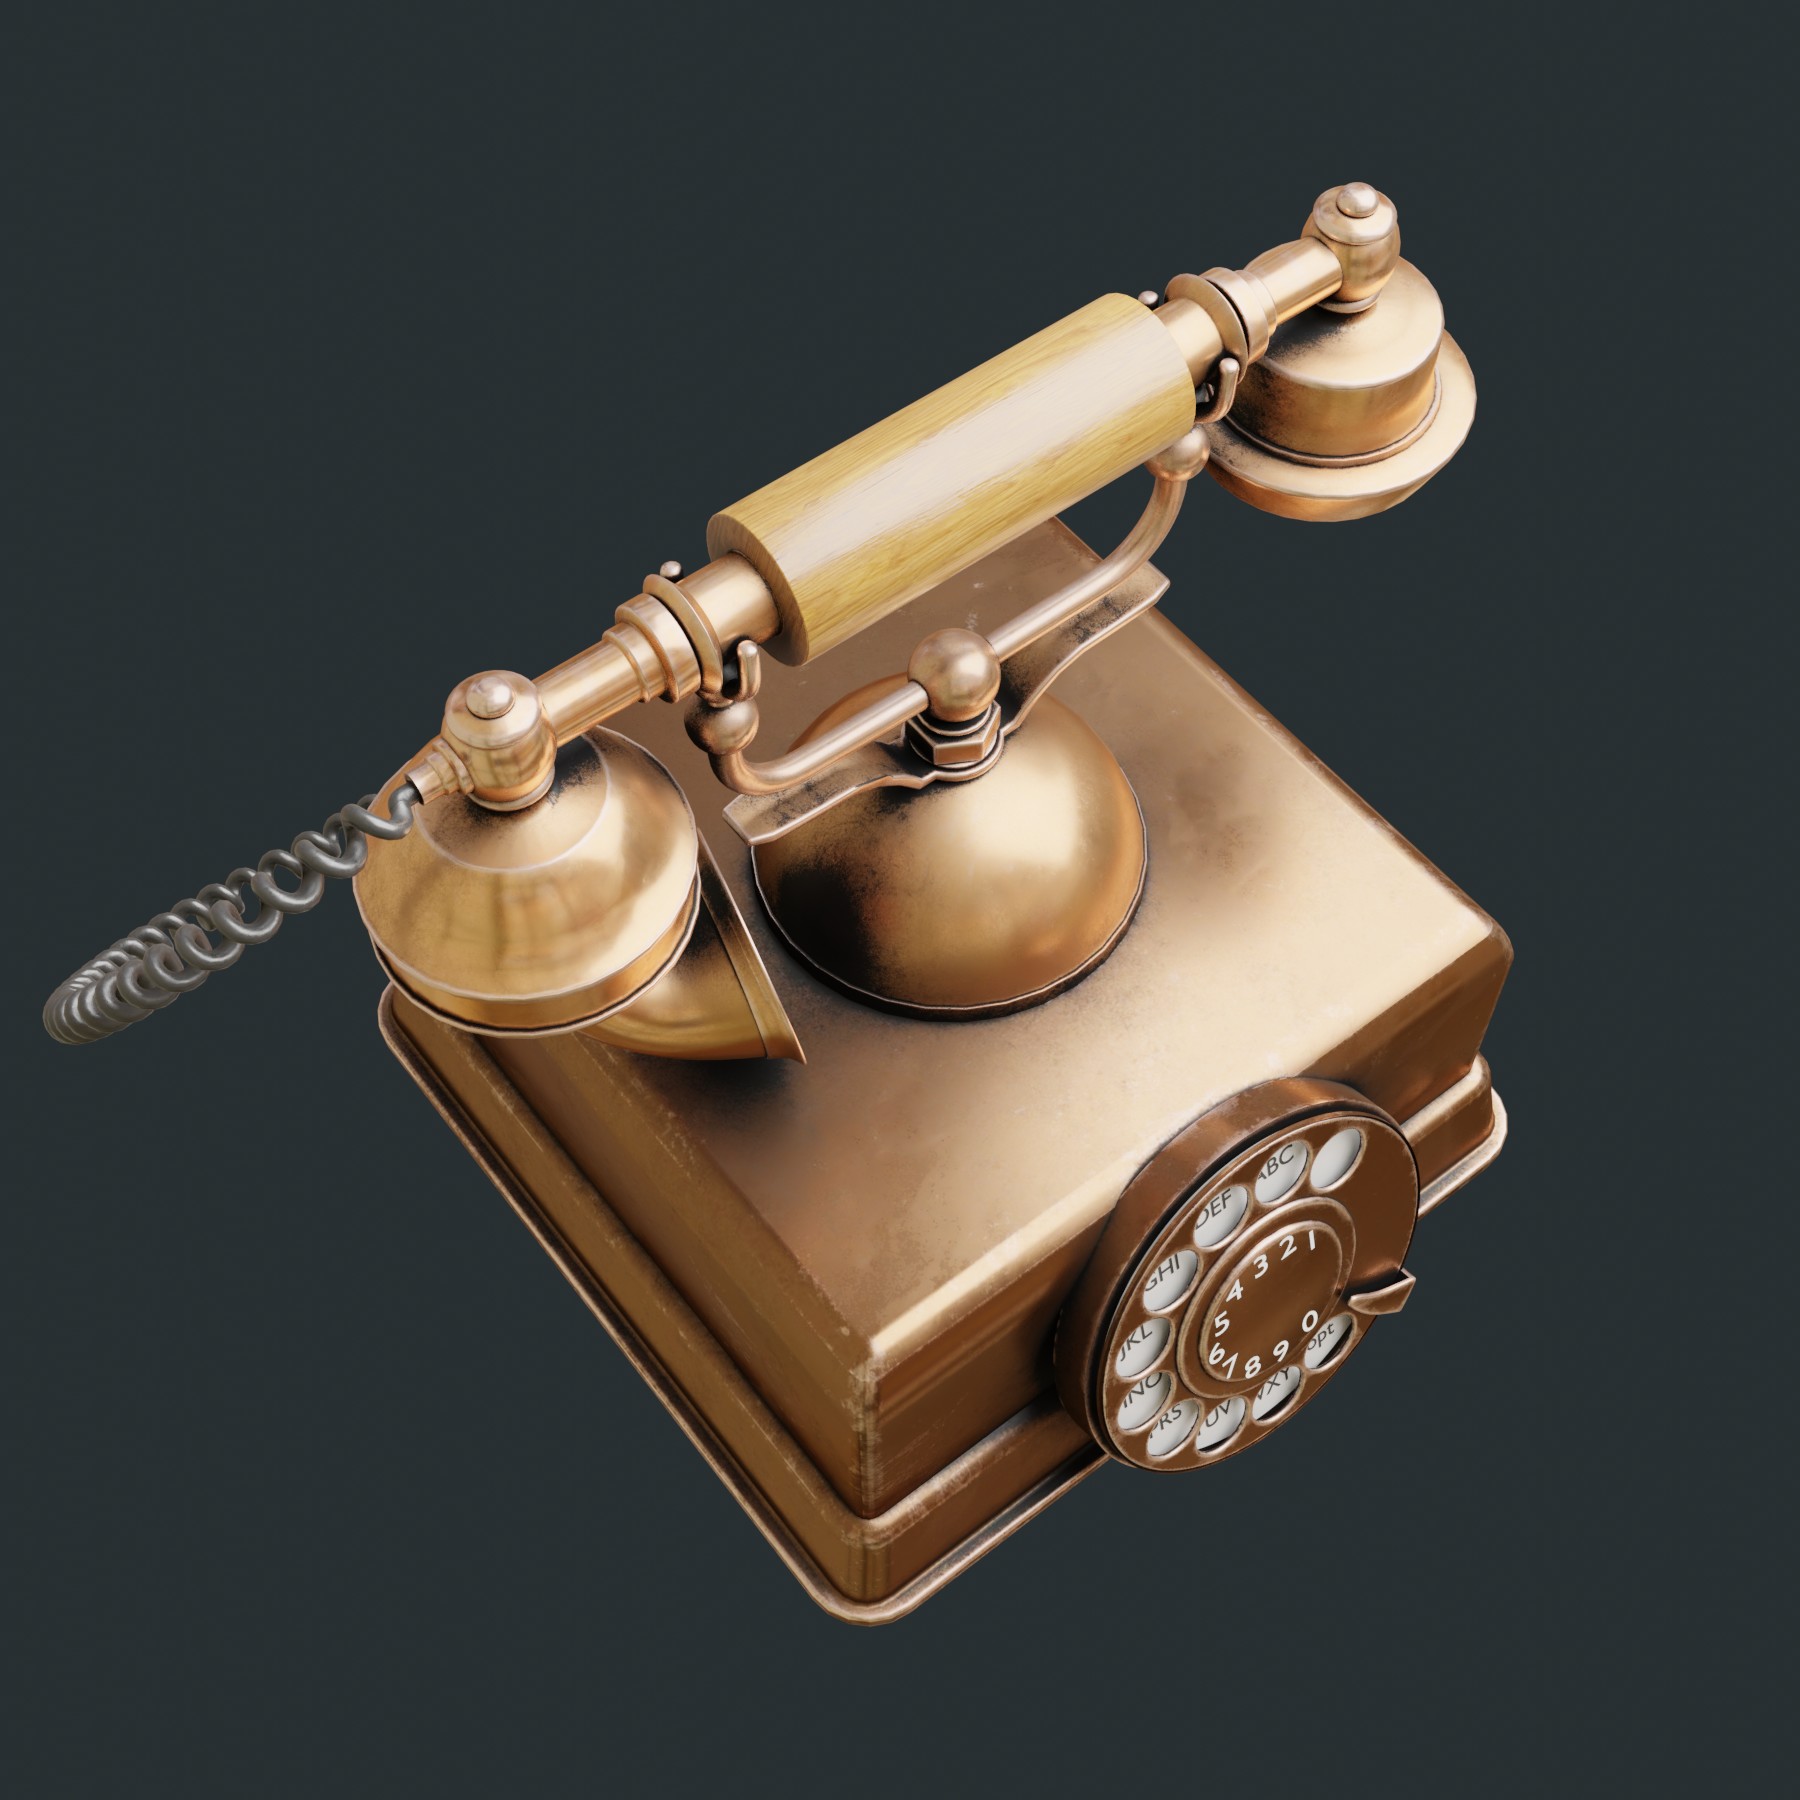 Vintage telephone in Blender cycles render image